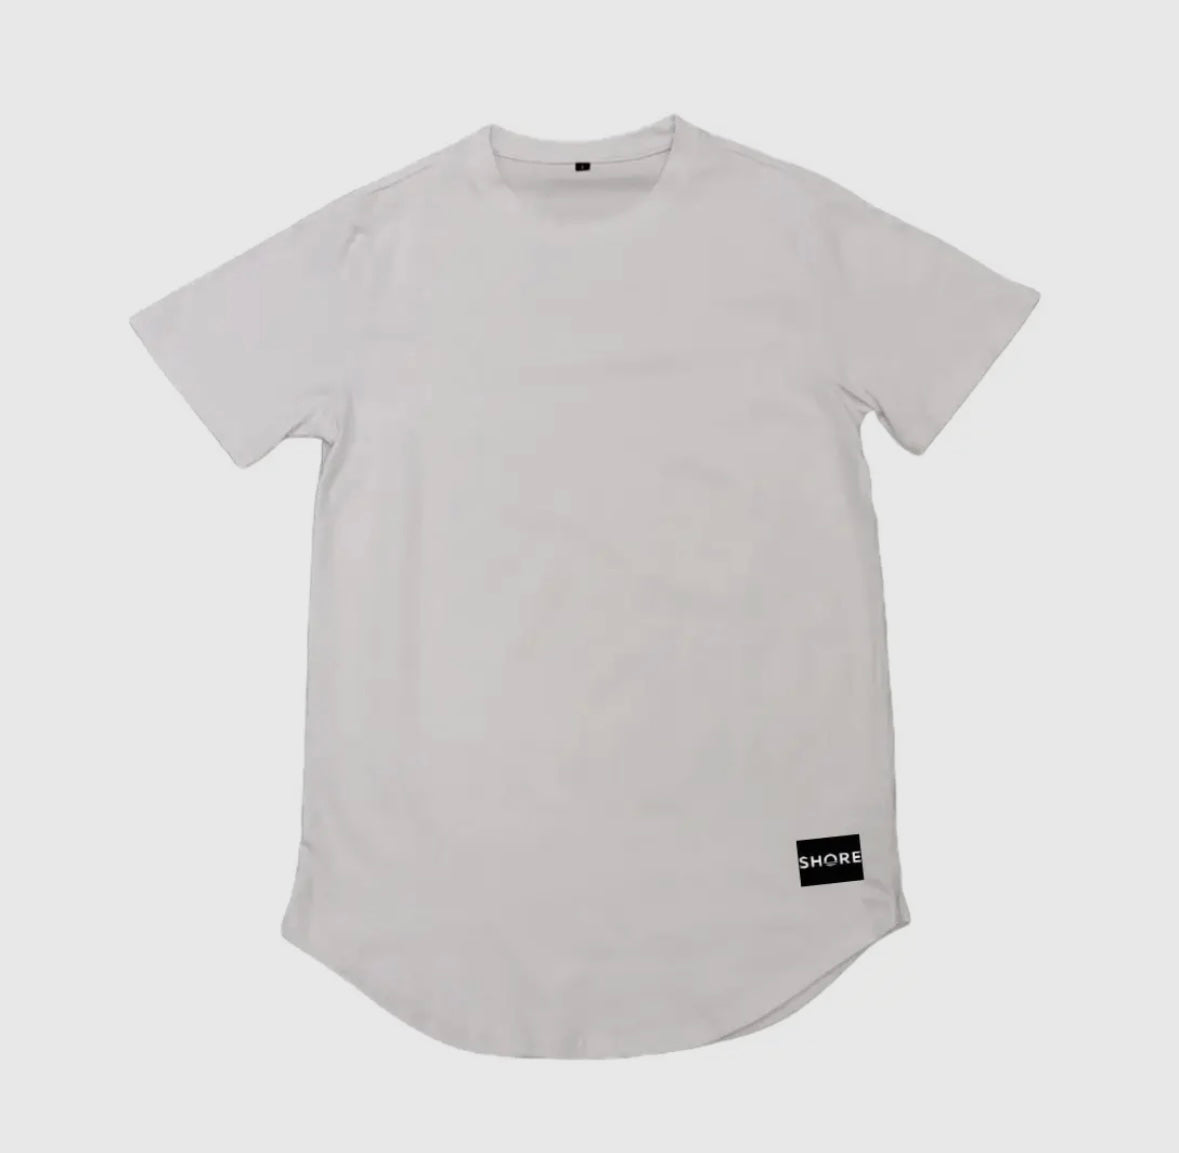 Shore apparel smalls T shirt